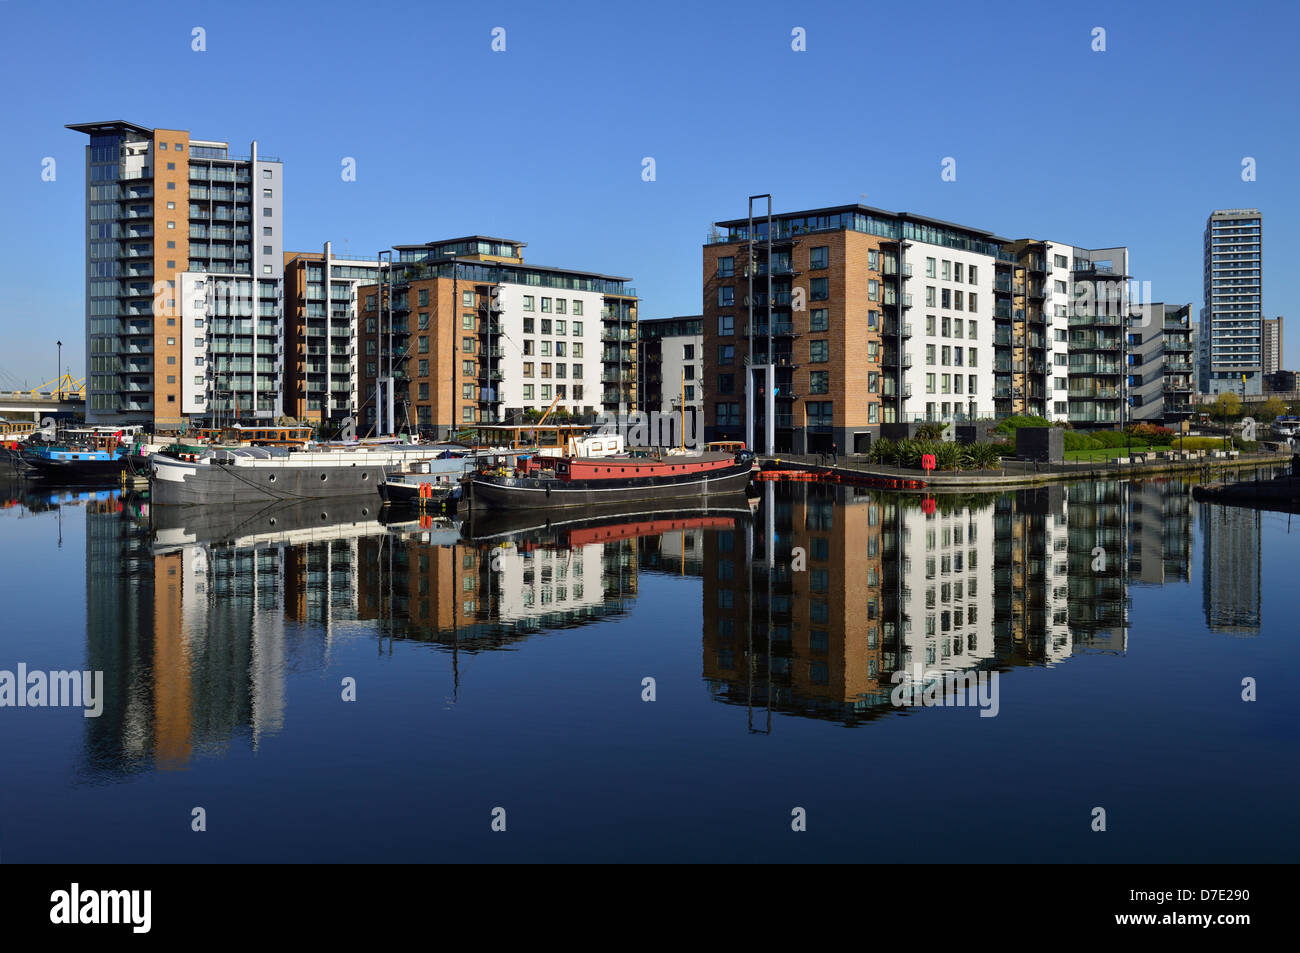 Blackwall Basin, Canary Wharf, London E14, United Kingdom Stock Photo